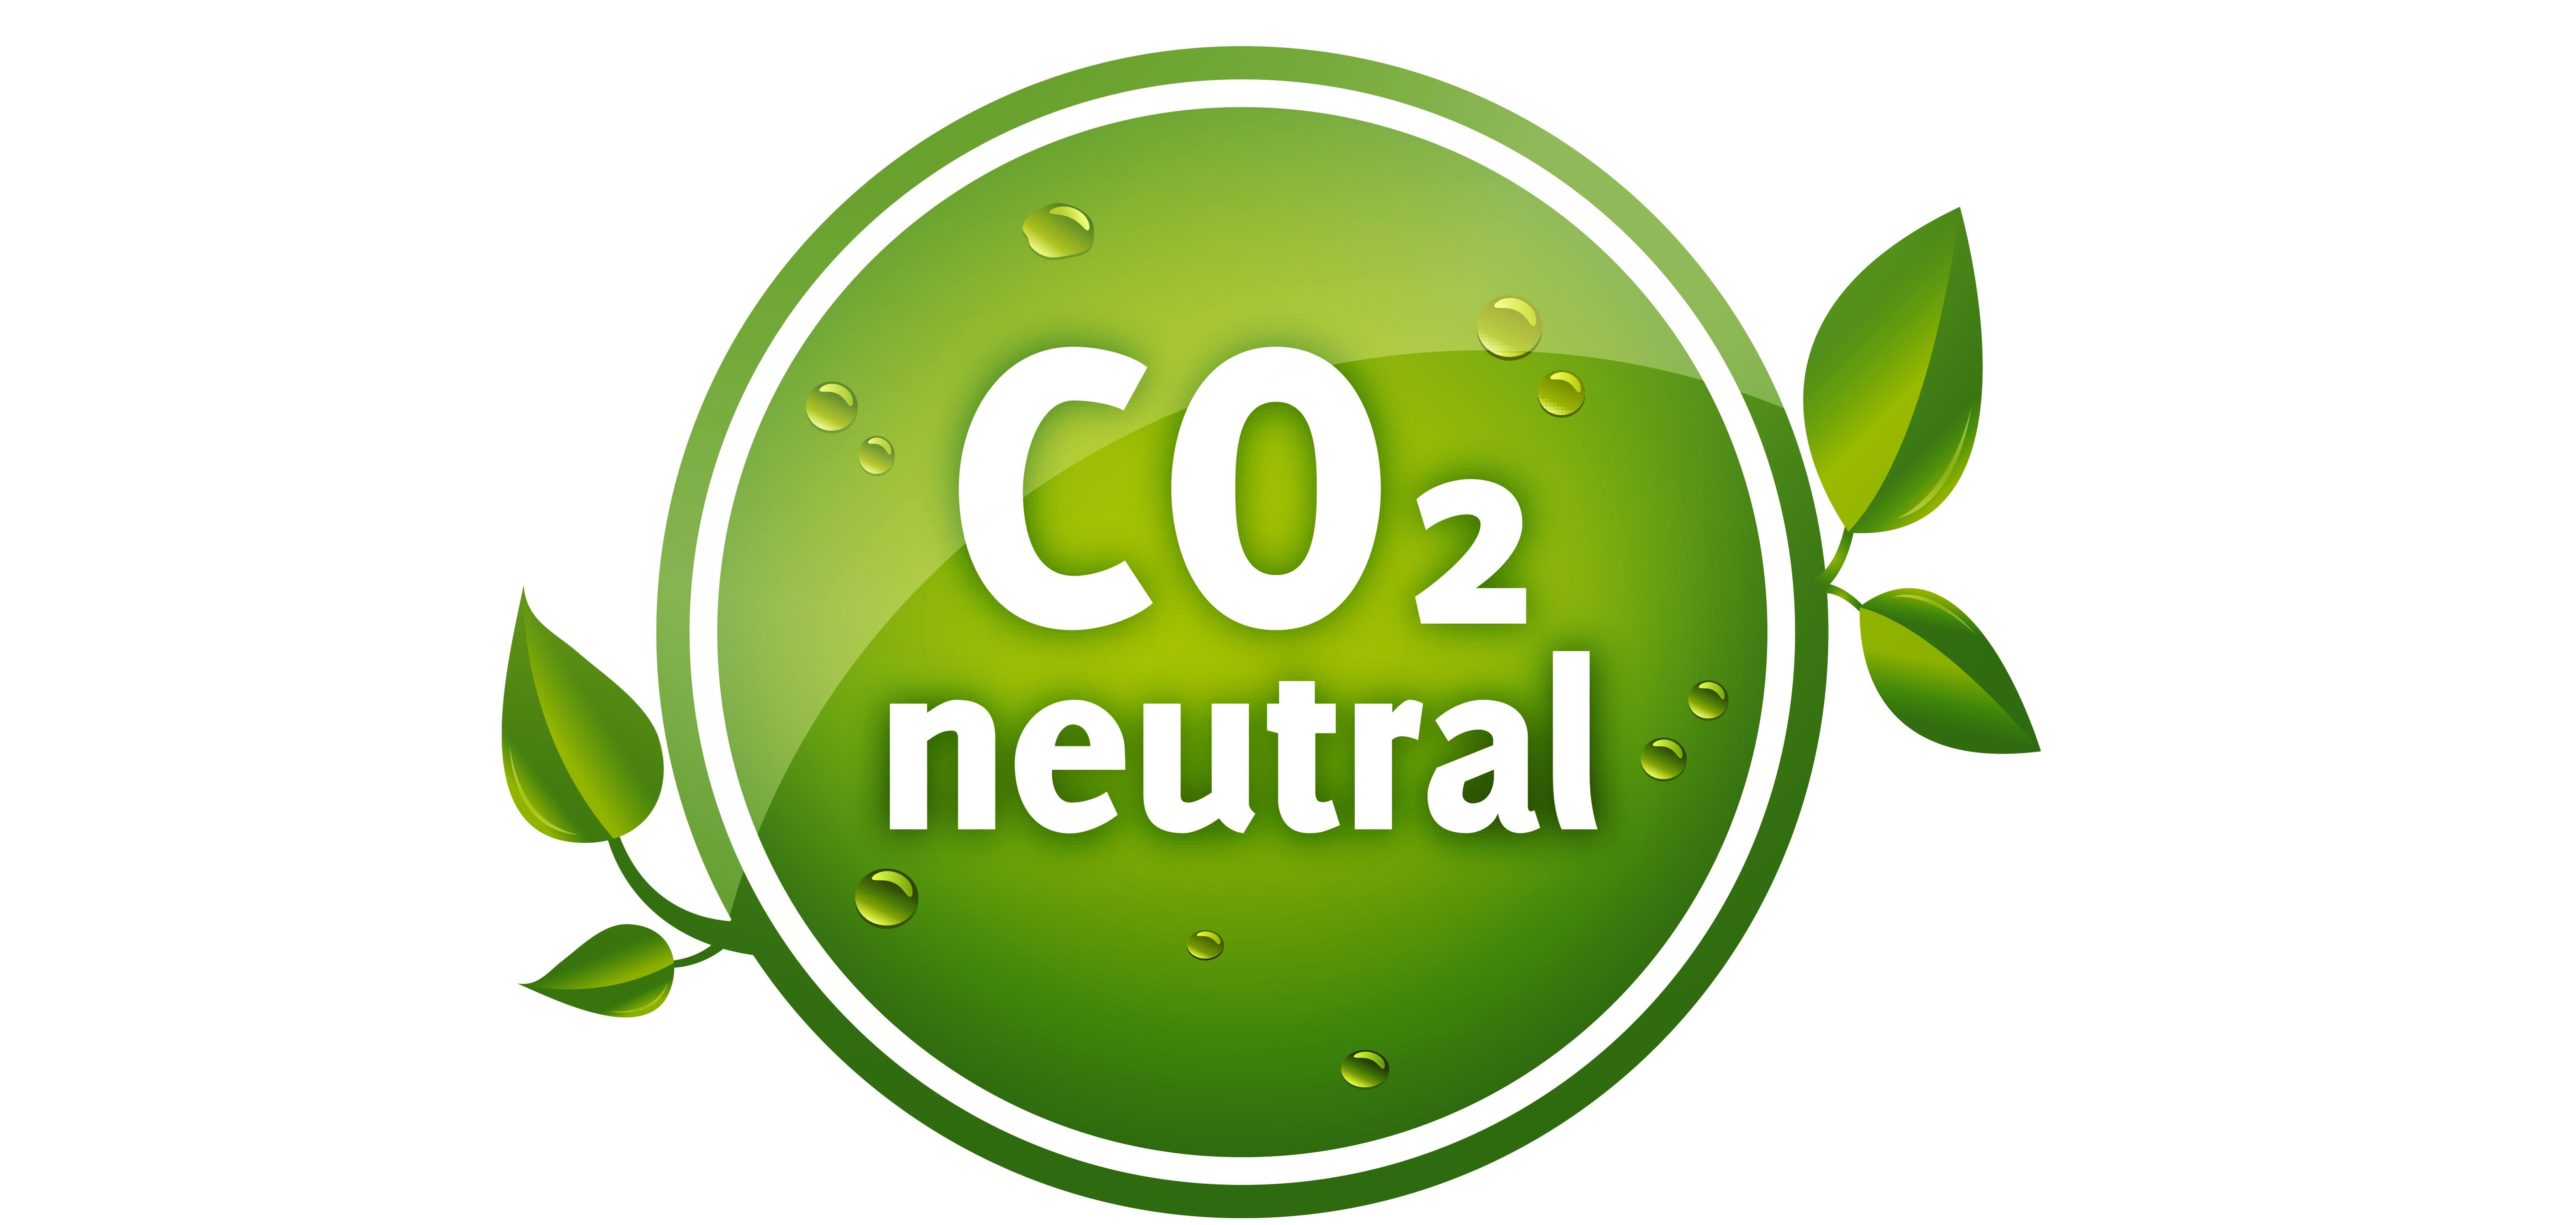 CO2 Neutral Logo in Grün mit Blättern